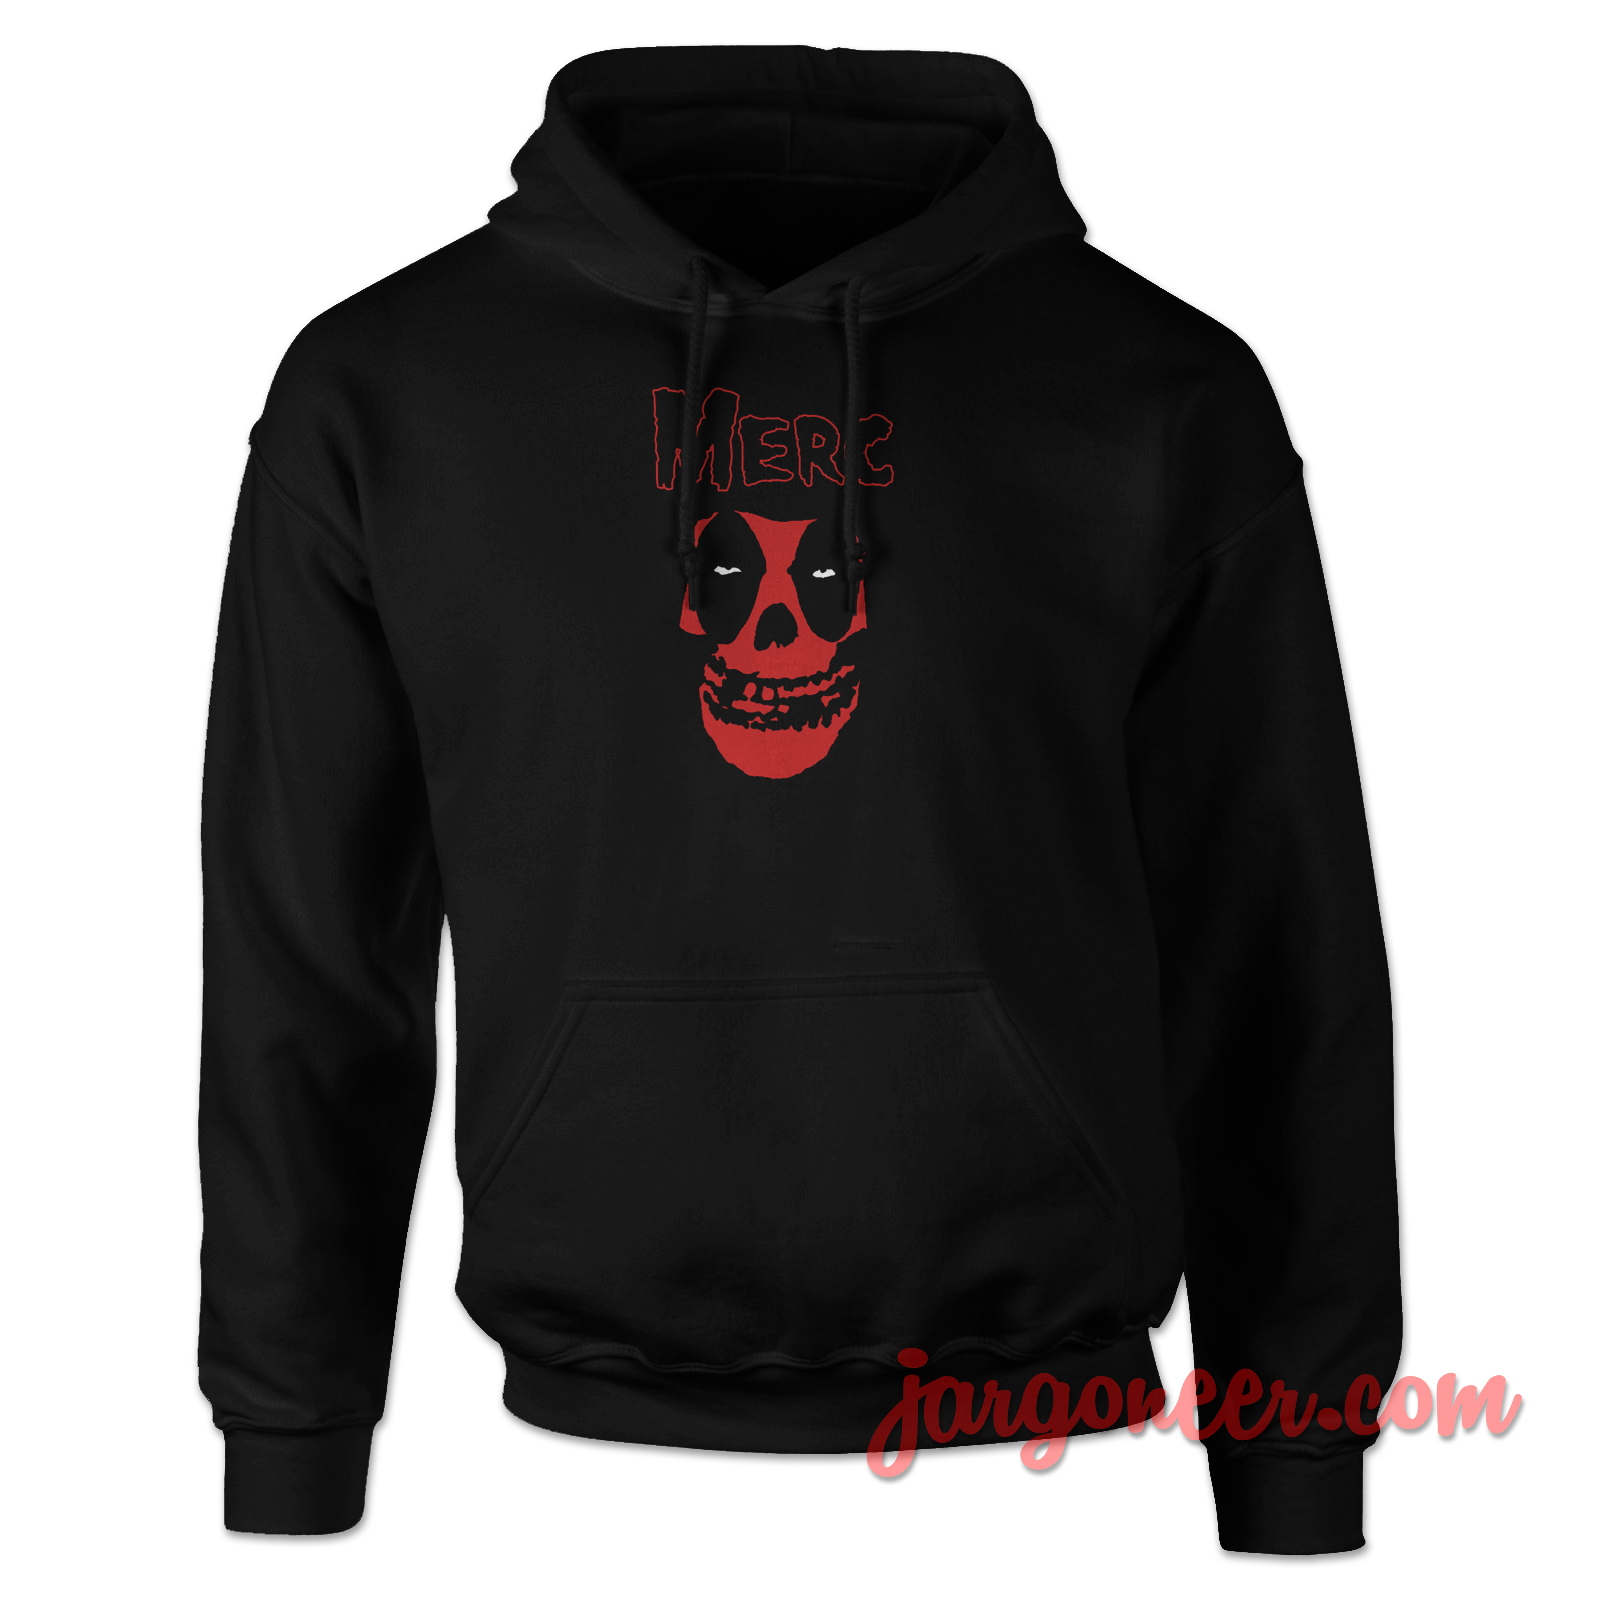 Deadpool Misfit 2 - Shop Unique Graphic Cool Shirt Designs